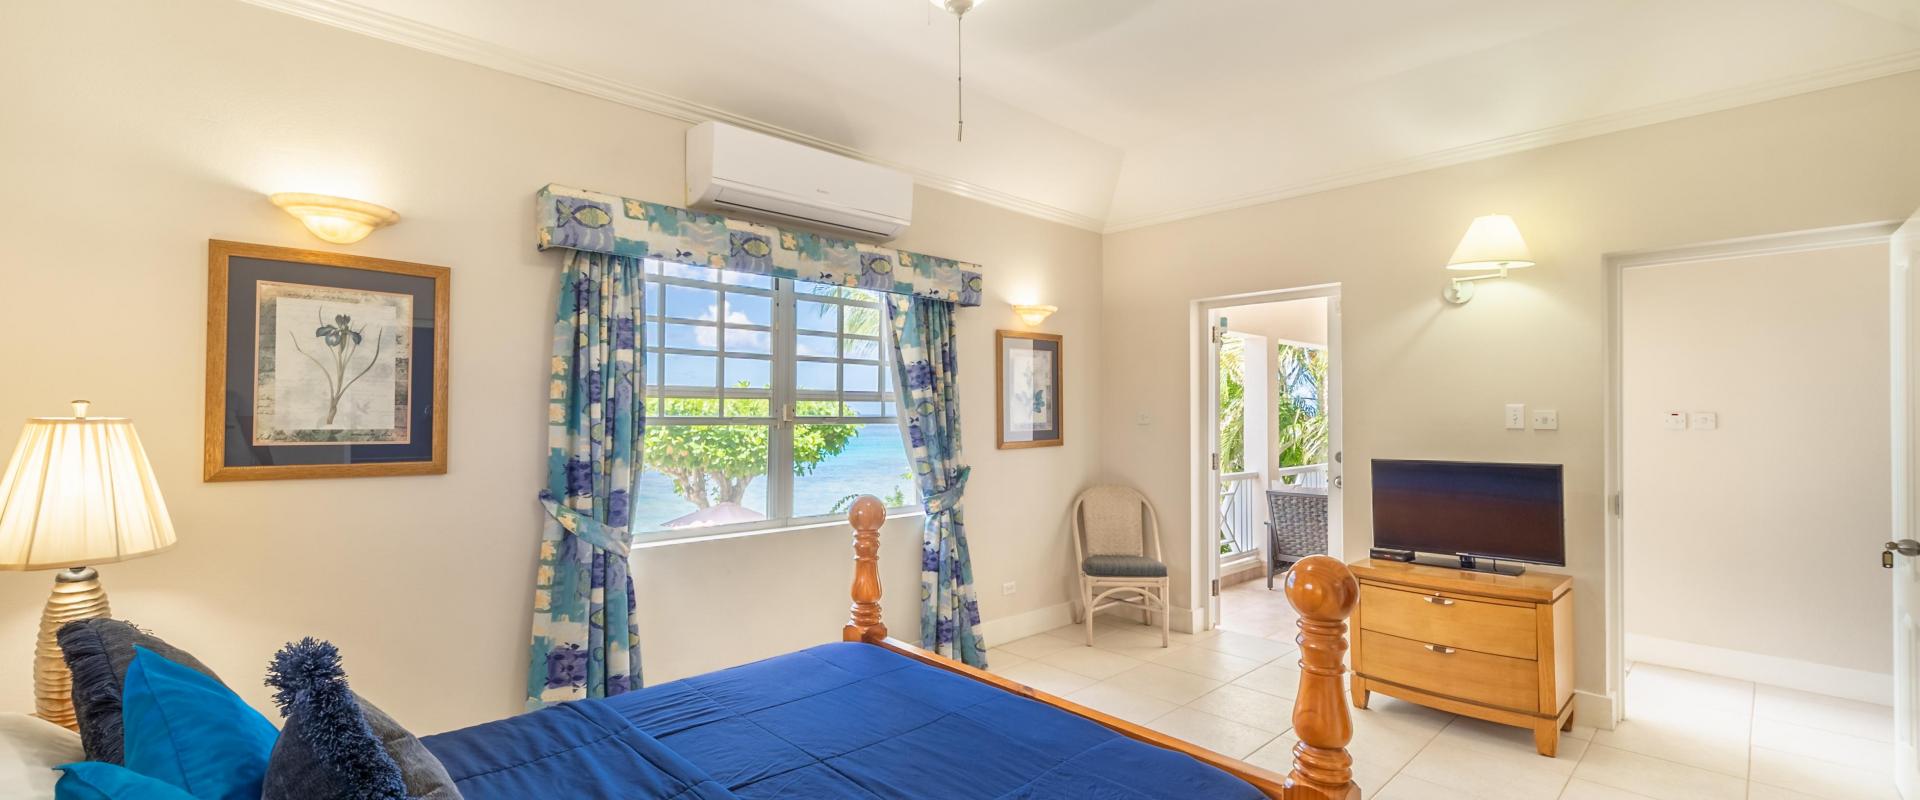 Barbados Beachfront Vacation Rental Villa Seawards Master Bedroom towards Patio with TV